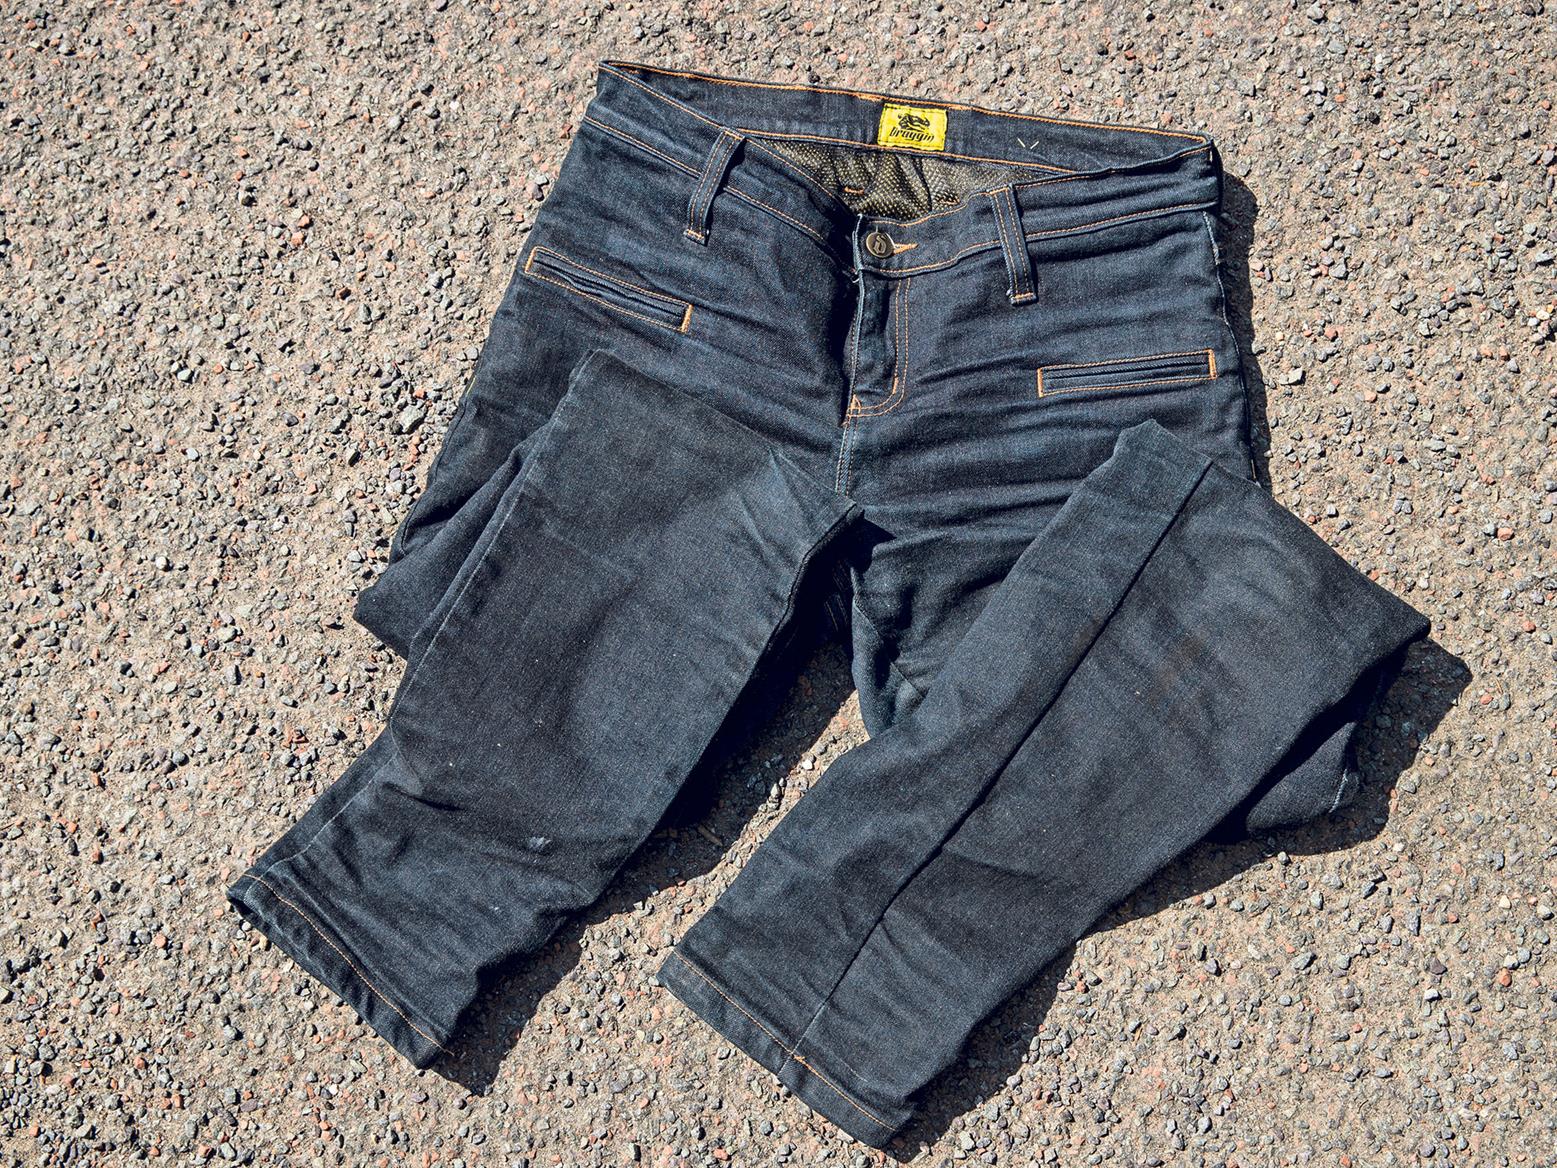 kevlar reinforced jeans